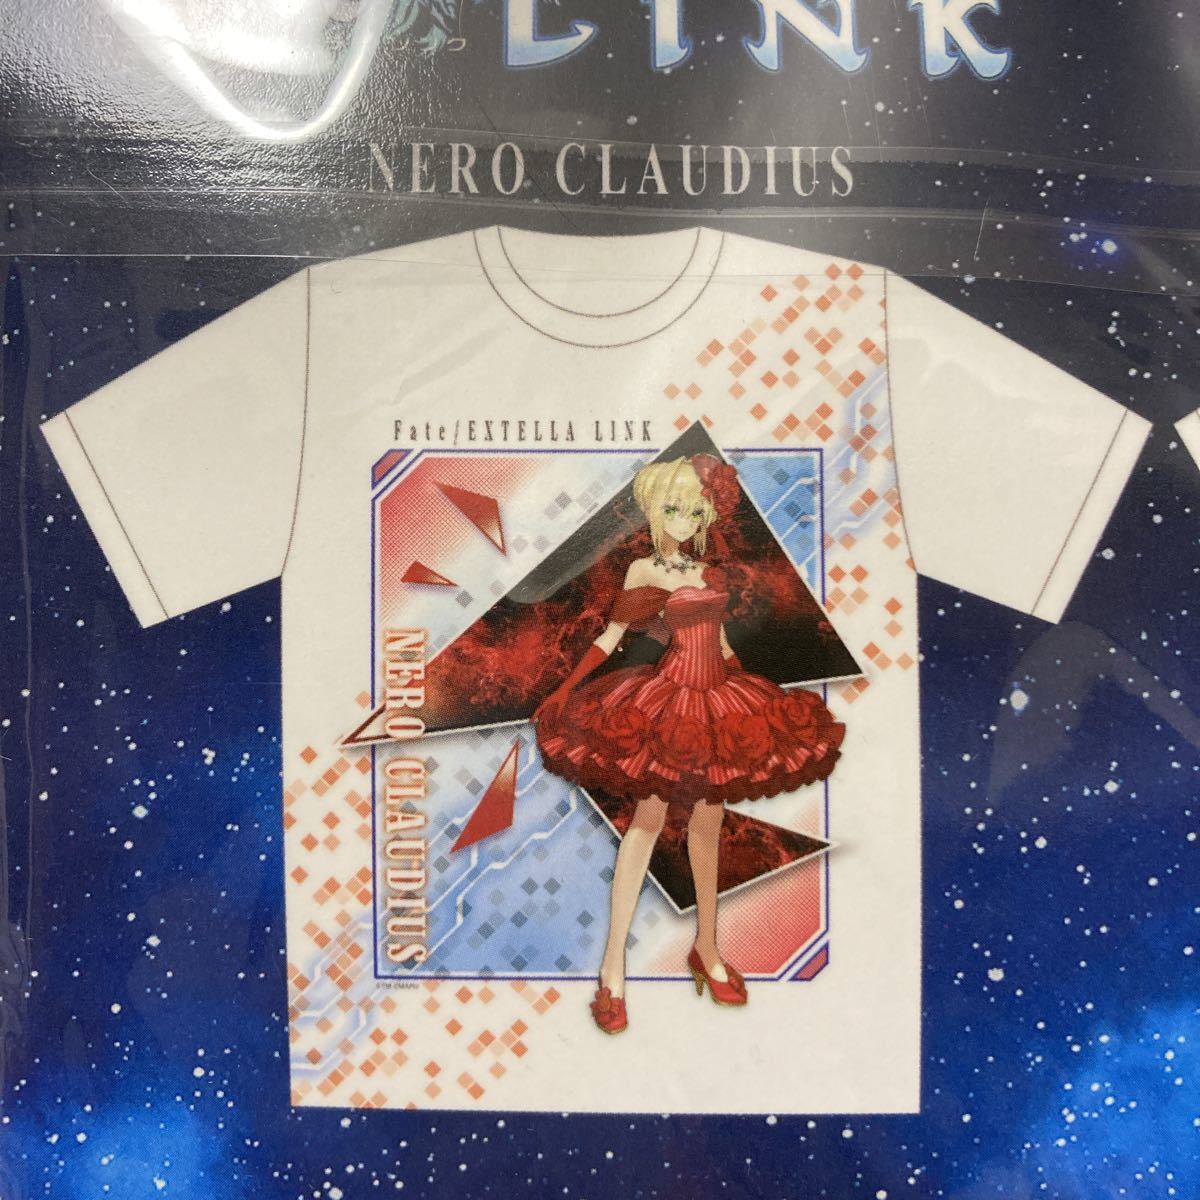 Fate/EXTELLA LINK フェイト エクステラリンク Tシャツ メンズフリーサイズ ネロ・クラウディウス プライズ_画像3